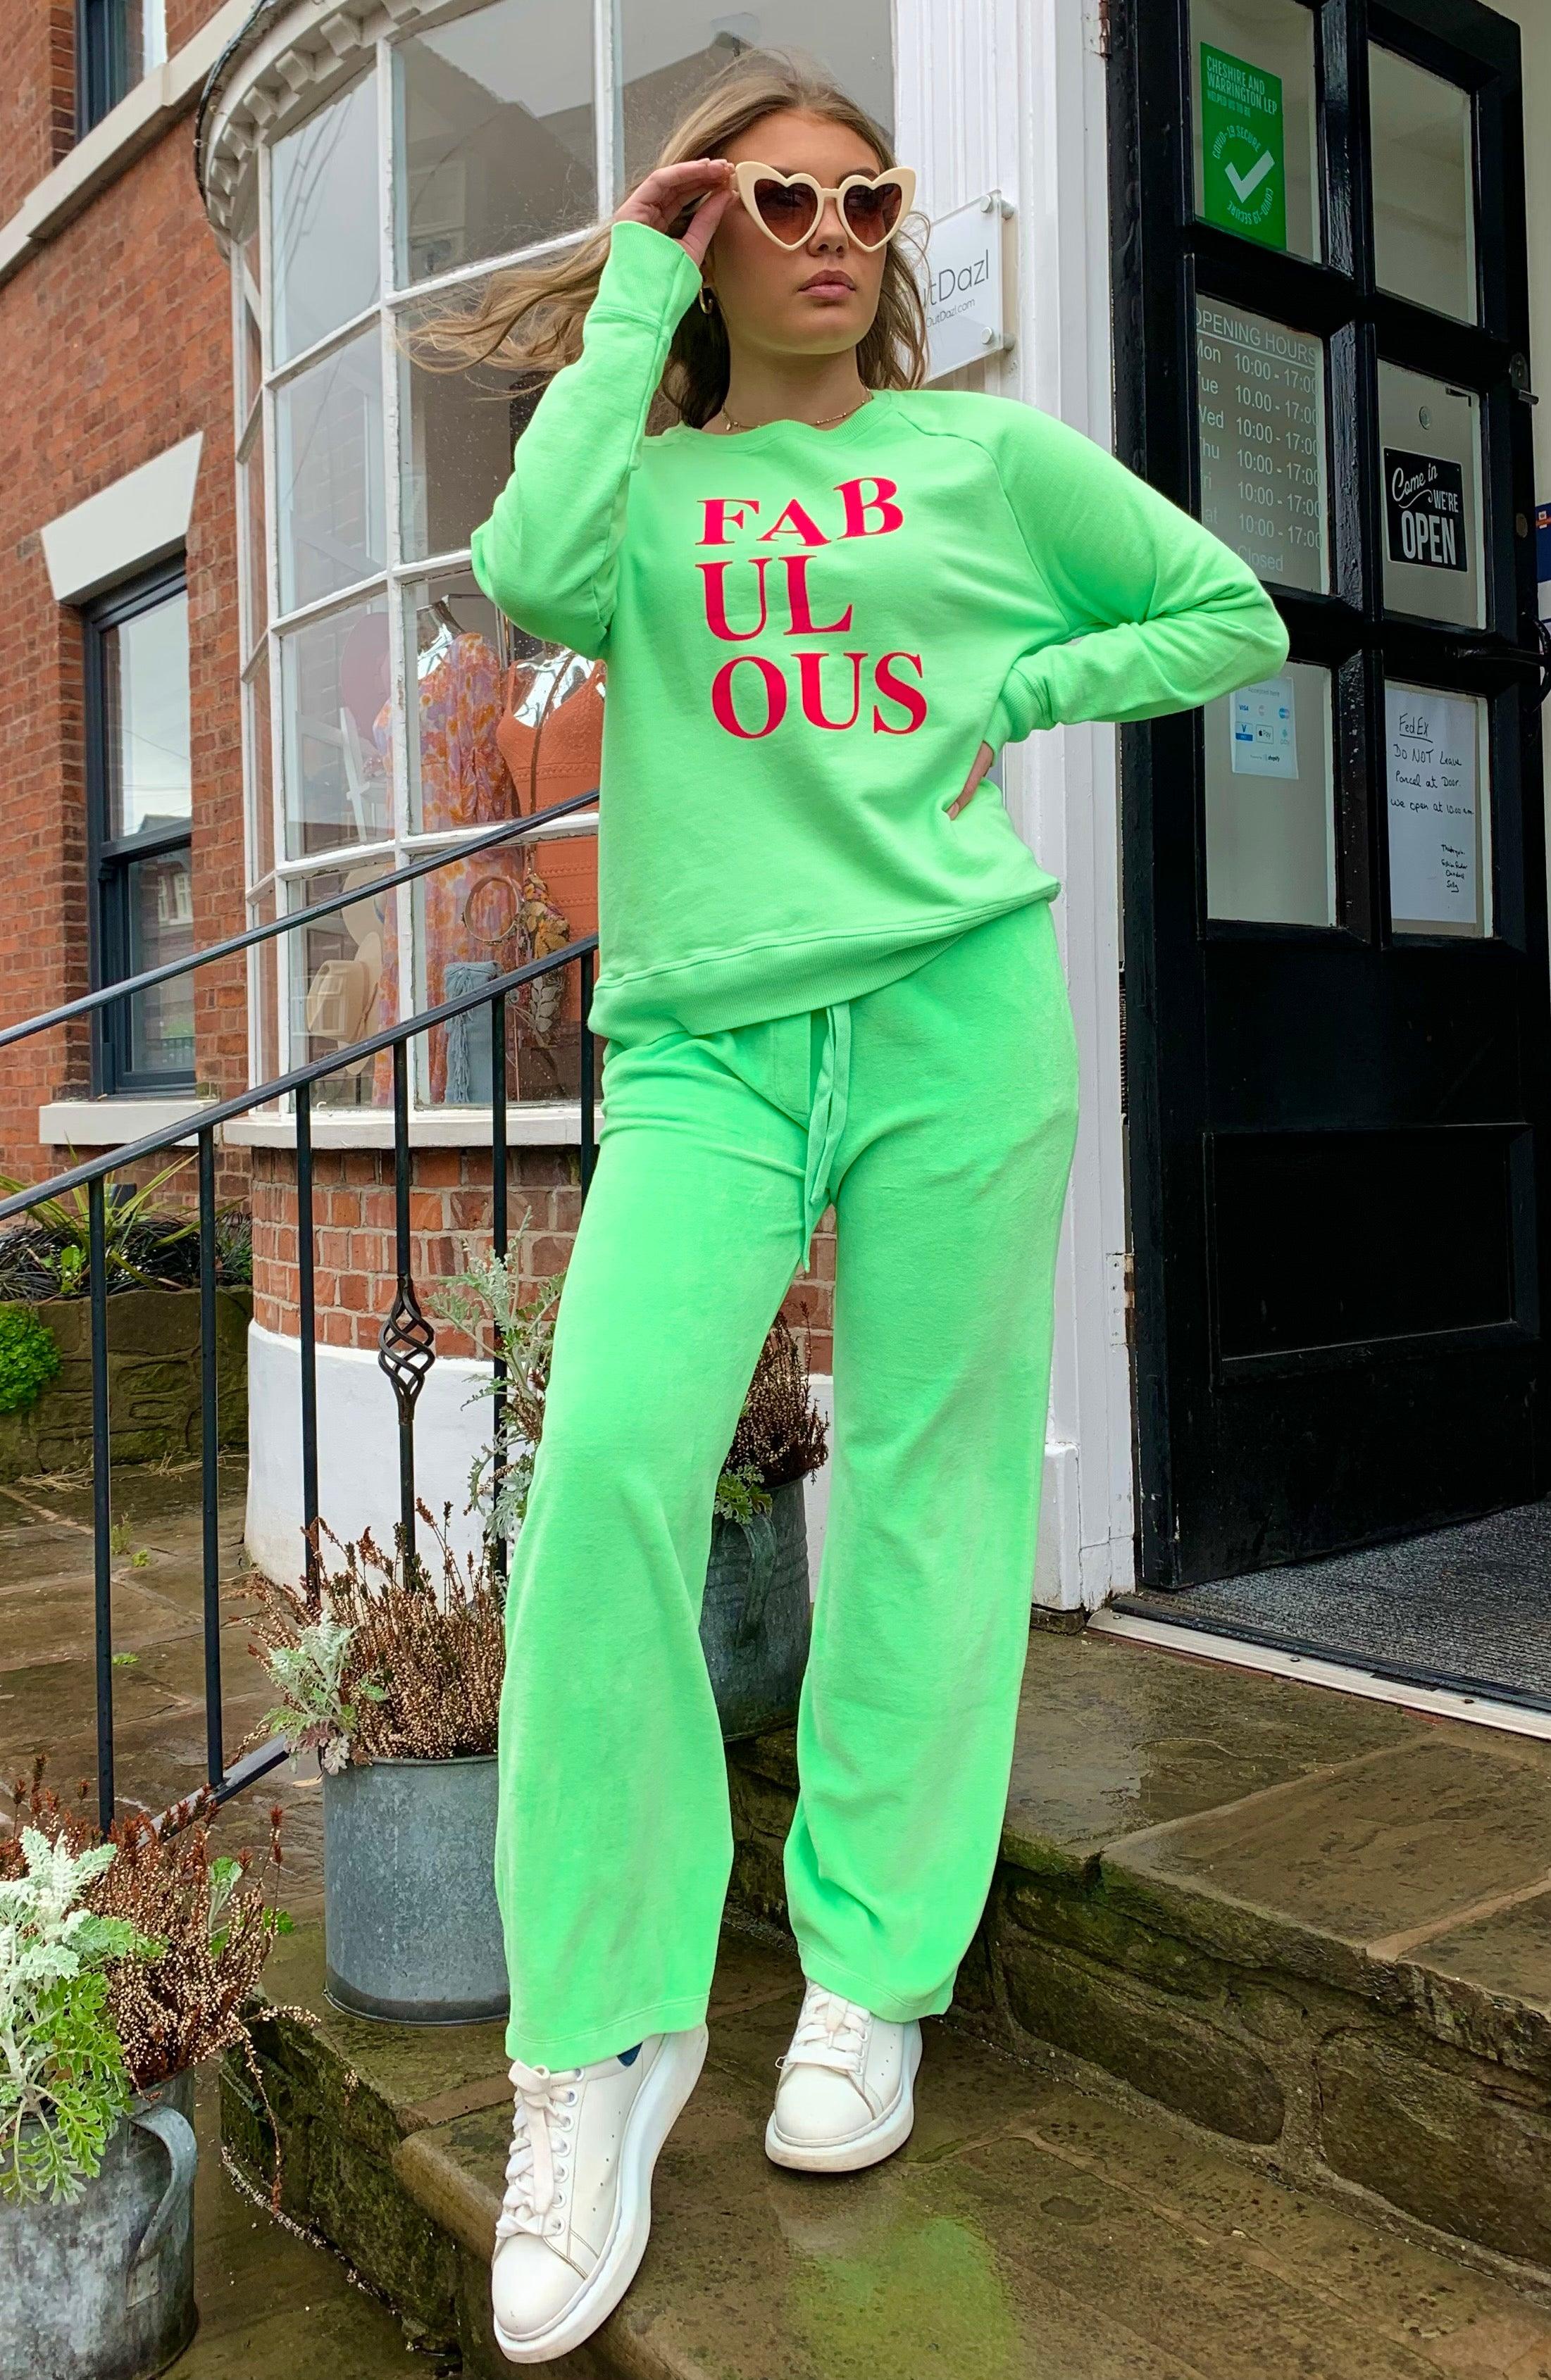 Jumper1234 - Fabulous Sweatshirt in Neon Green - OutDazl